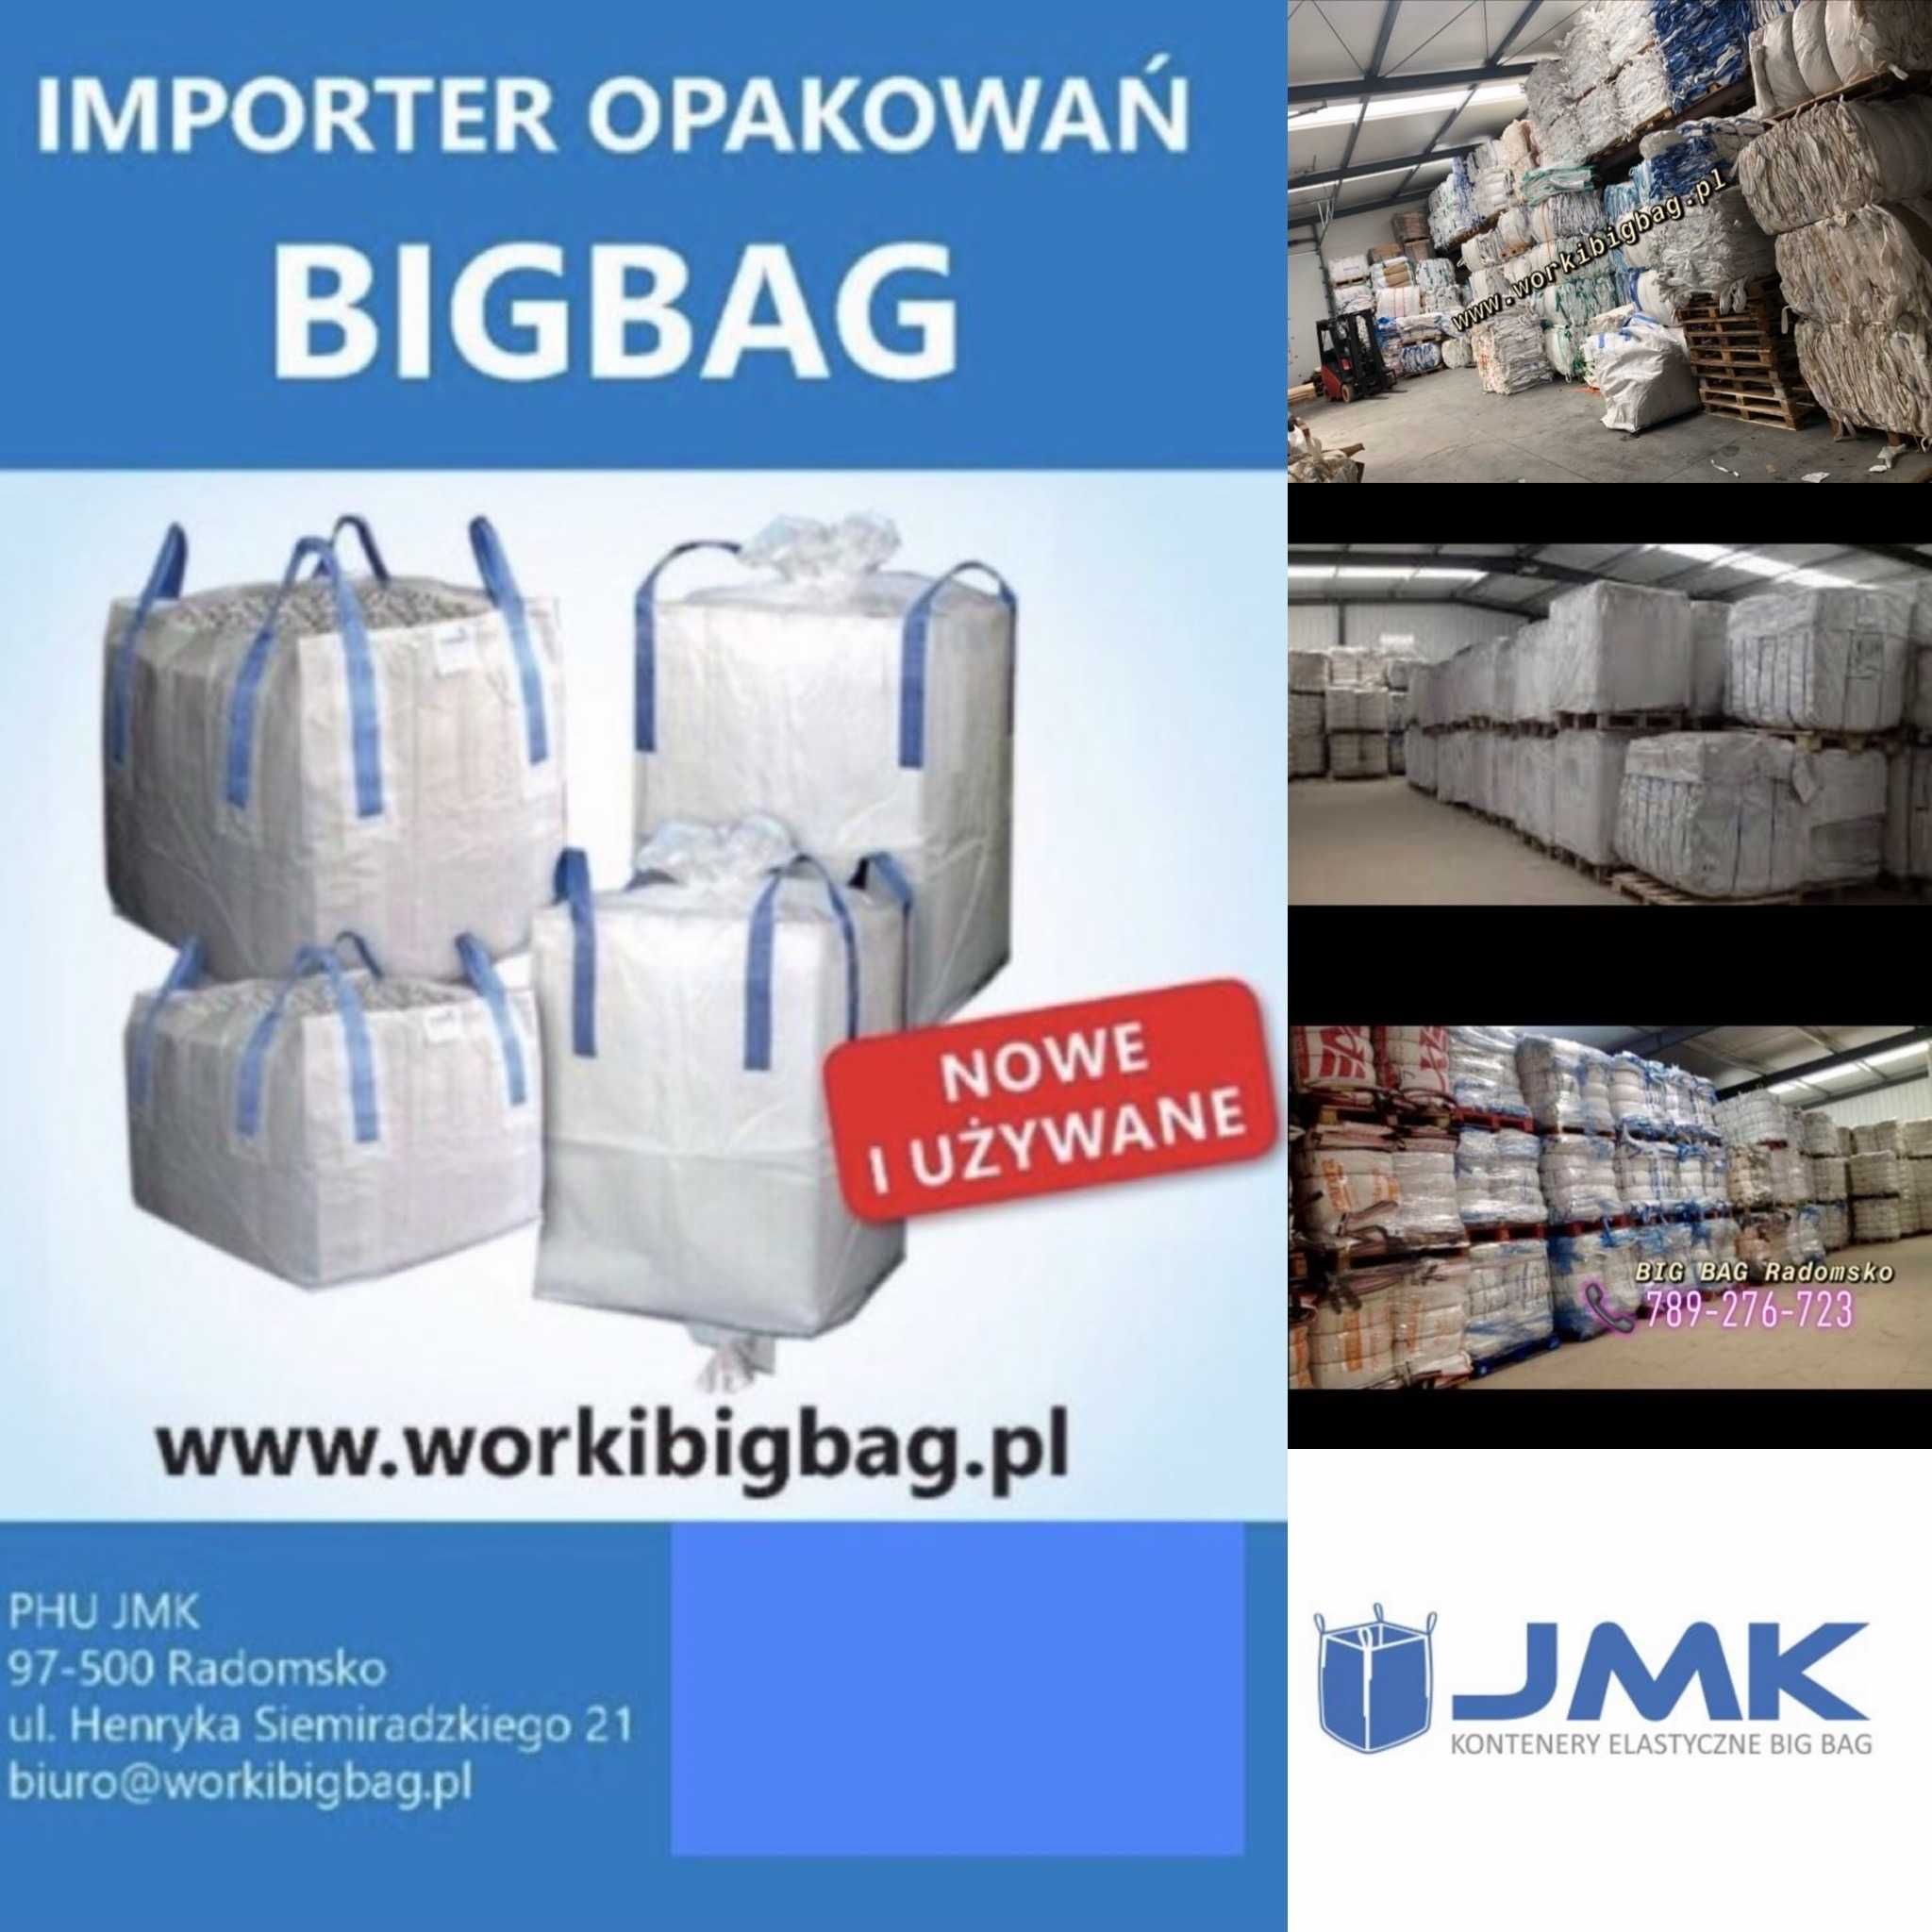 Worki big bag bagi NOWE 90x90x120 bigbag otwarty WYSYLKA